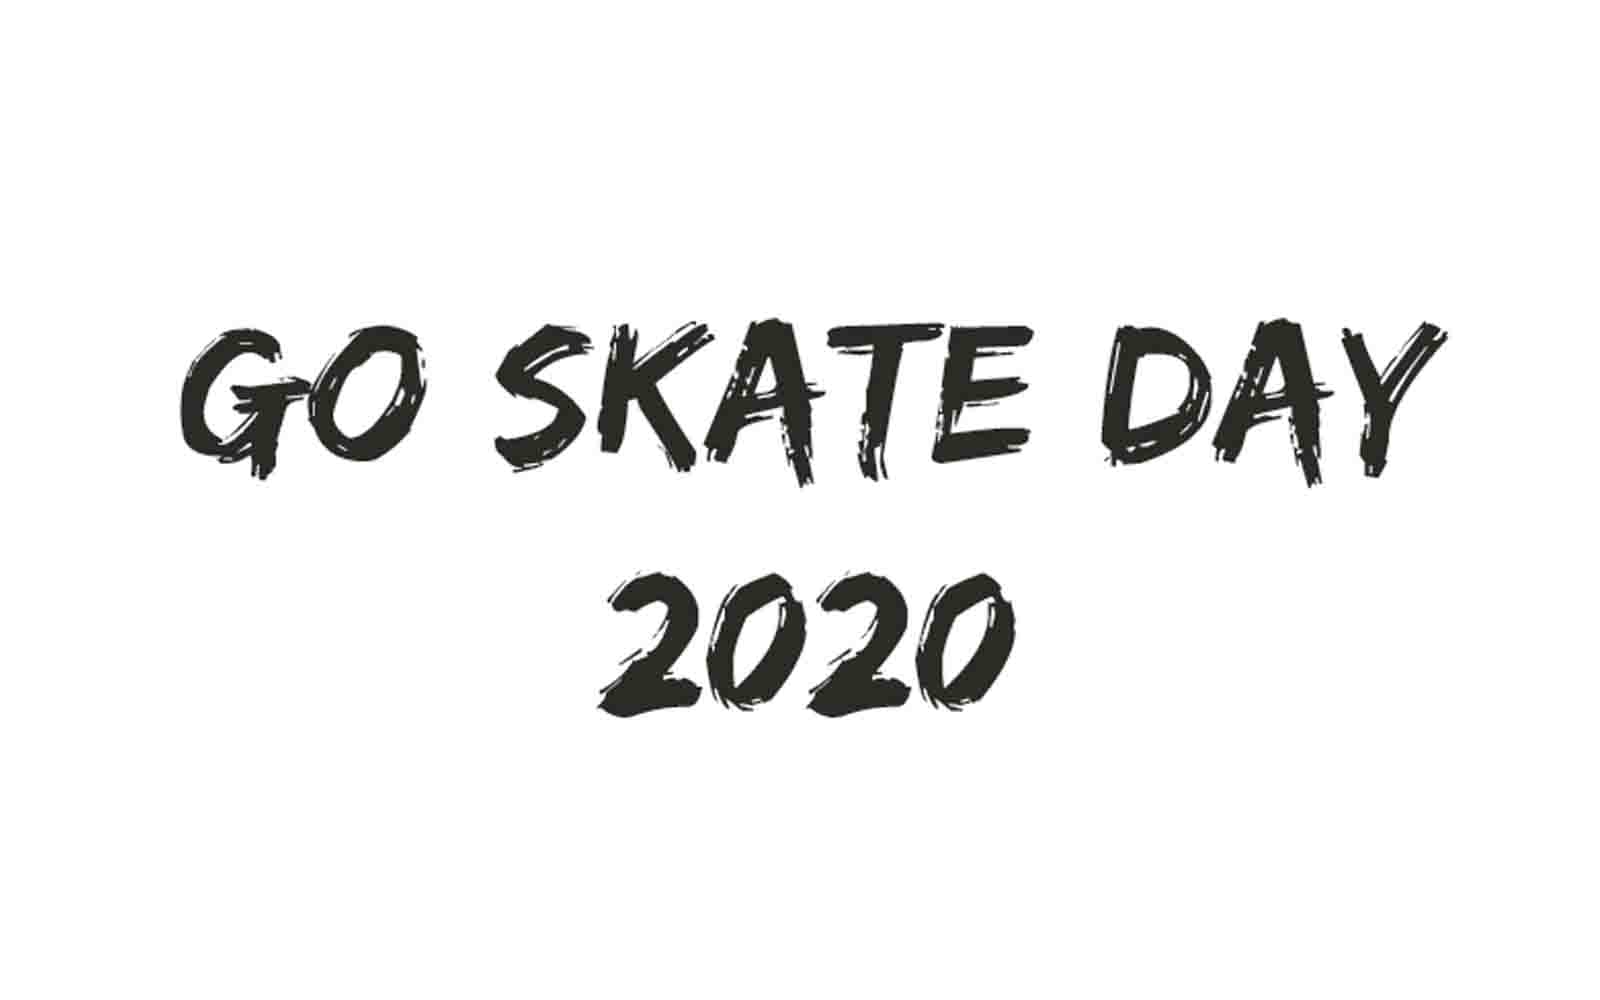 Go skate day 2020